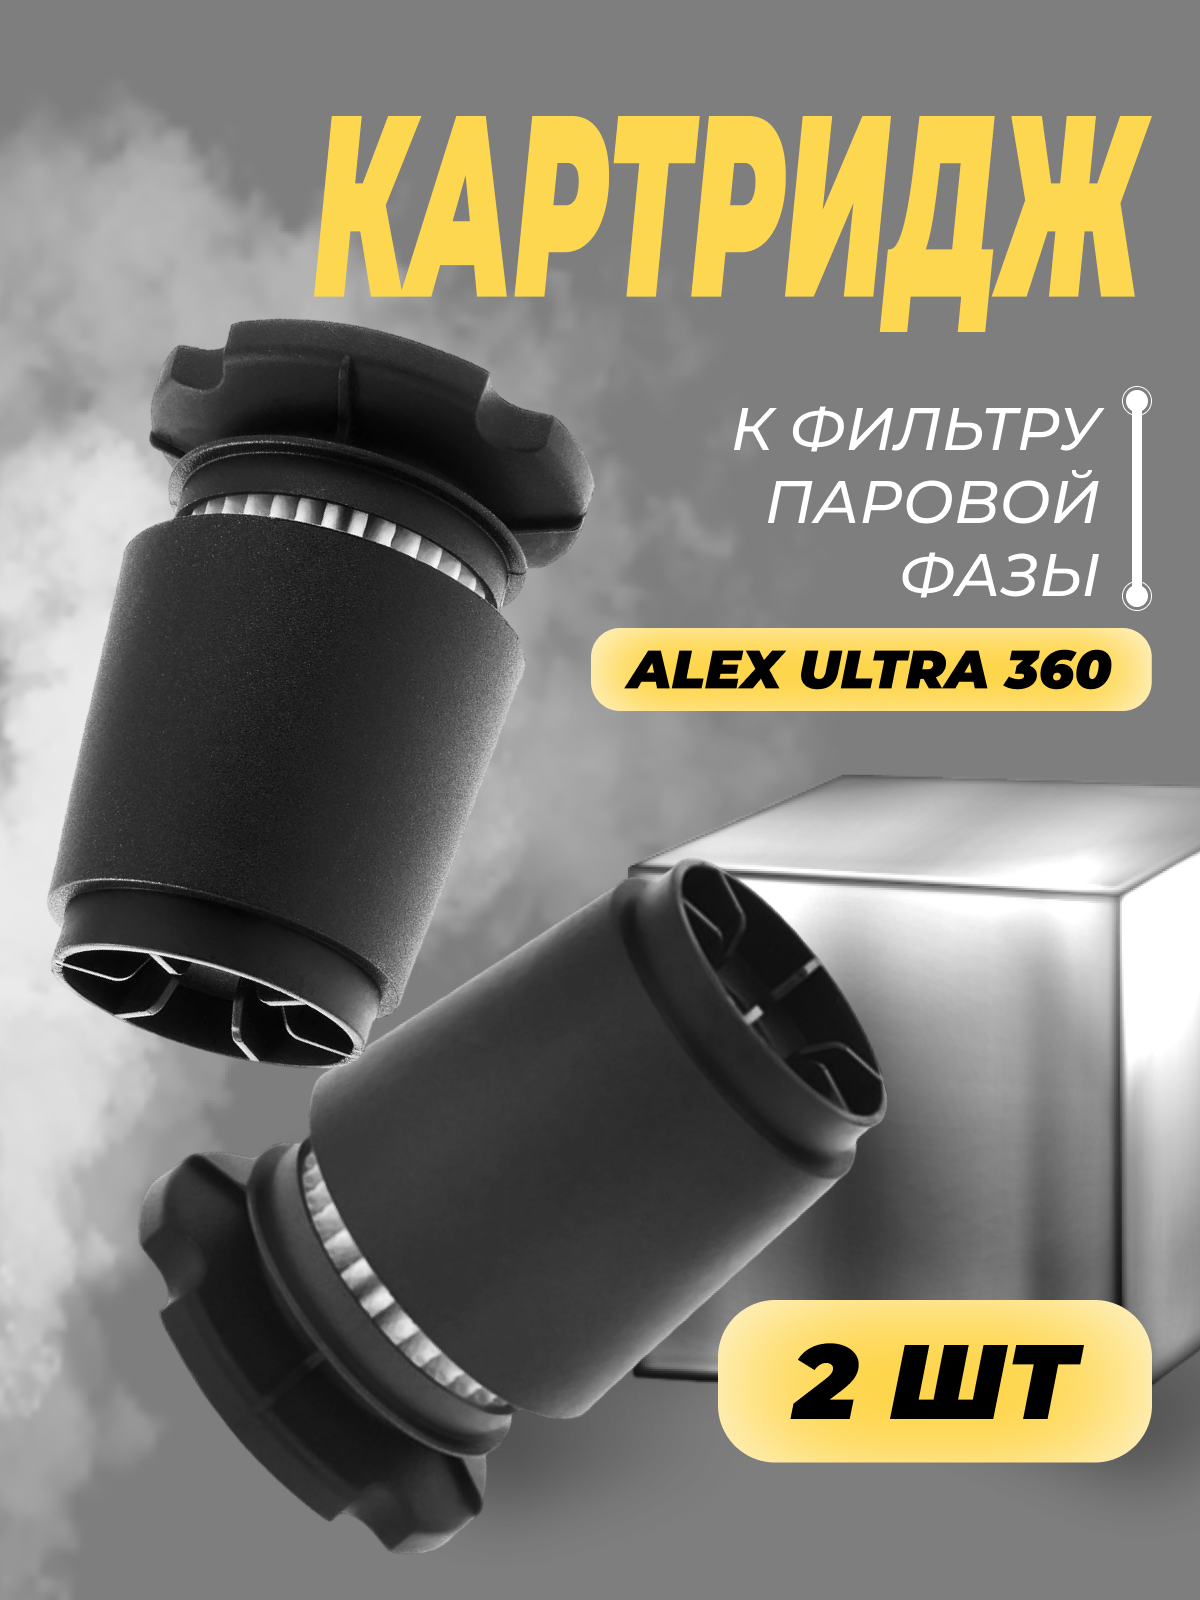 Фильтр картридж ГБО ALEX ULTRA 360 для вихревого газового отстойника